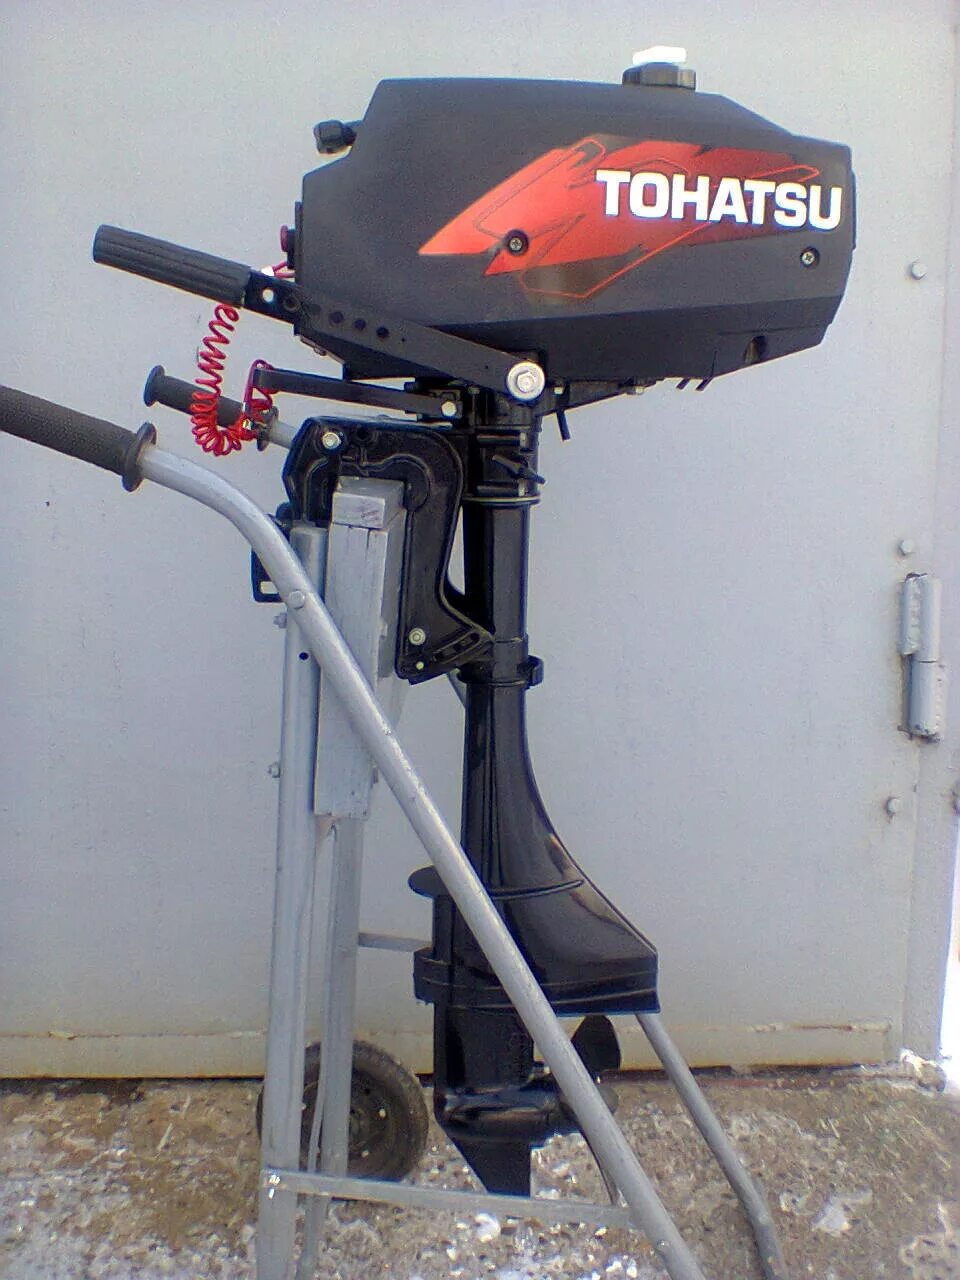 Лодочный мотор Tohatsu m 3.5b2 s. Лодочный мотор Тохатсу 3.5. Лодочный мотор Тохатсу 2.5. Лодочный мотор Tohatsu м 3.5 b2 s. Моторы тохатсу бу купить